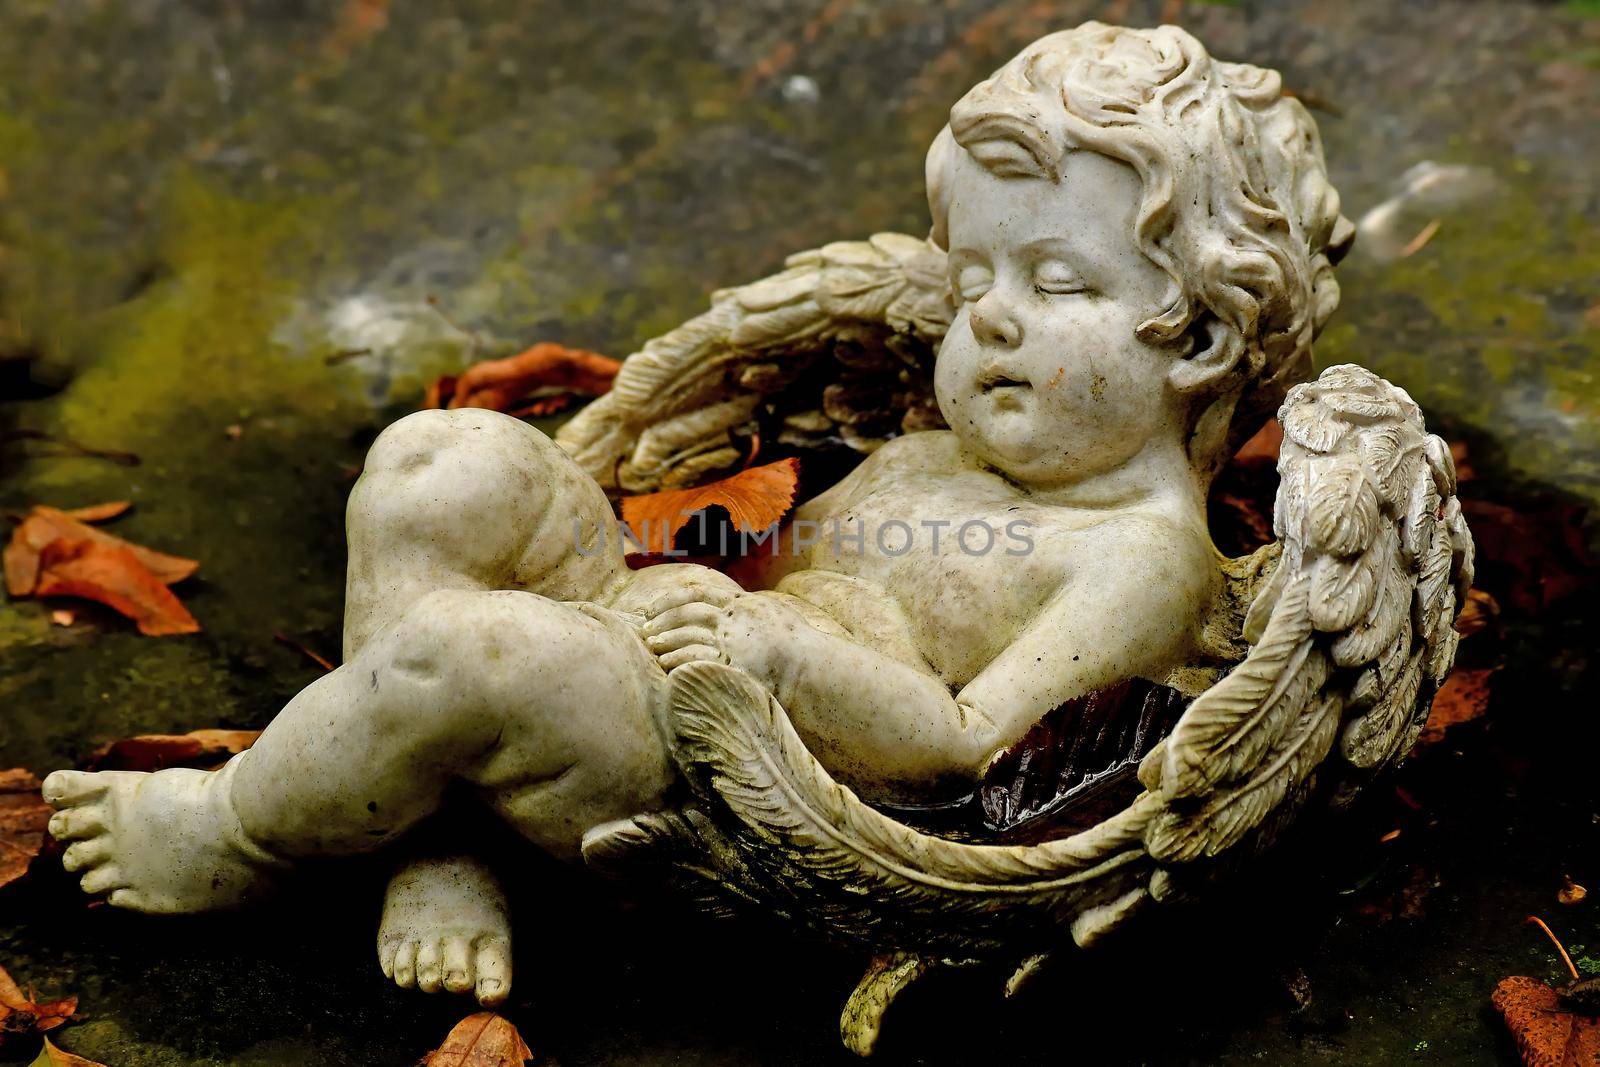 sweet angel figure on a grave in autumn with fallen leaves by Jochen